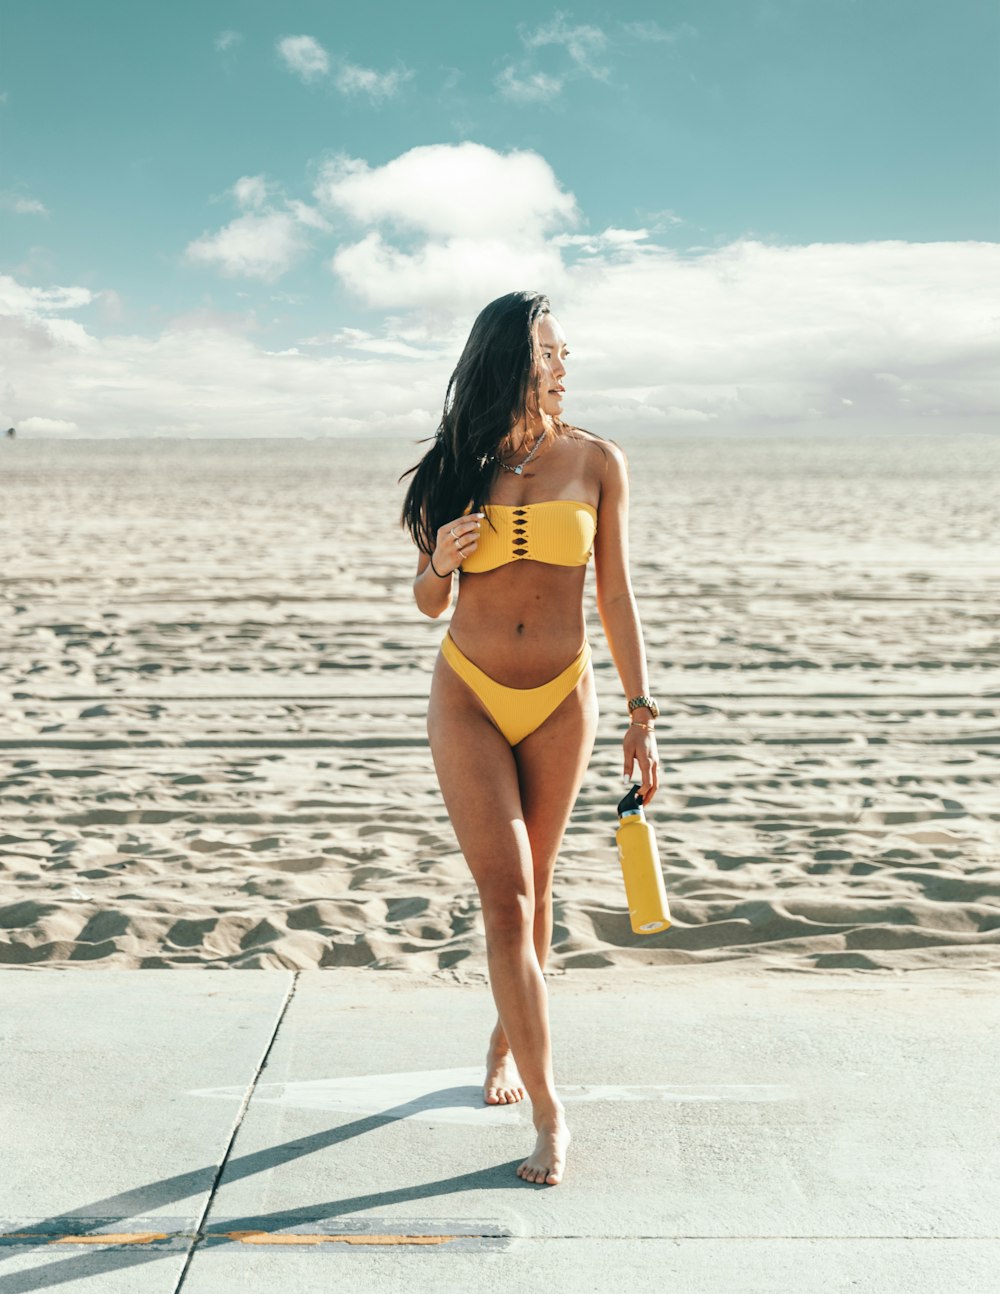 Stehende Frau im gelben Bikini mit gelber Flasche